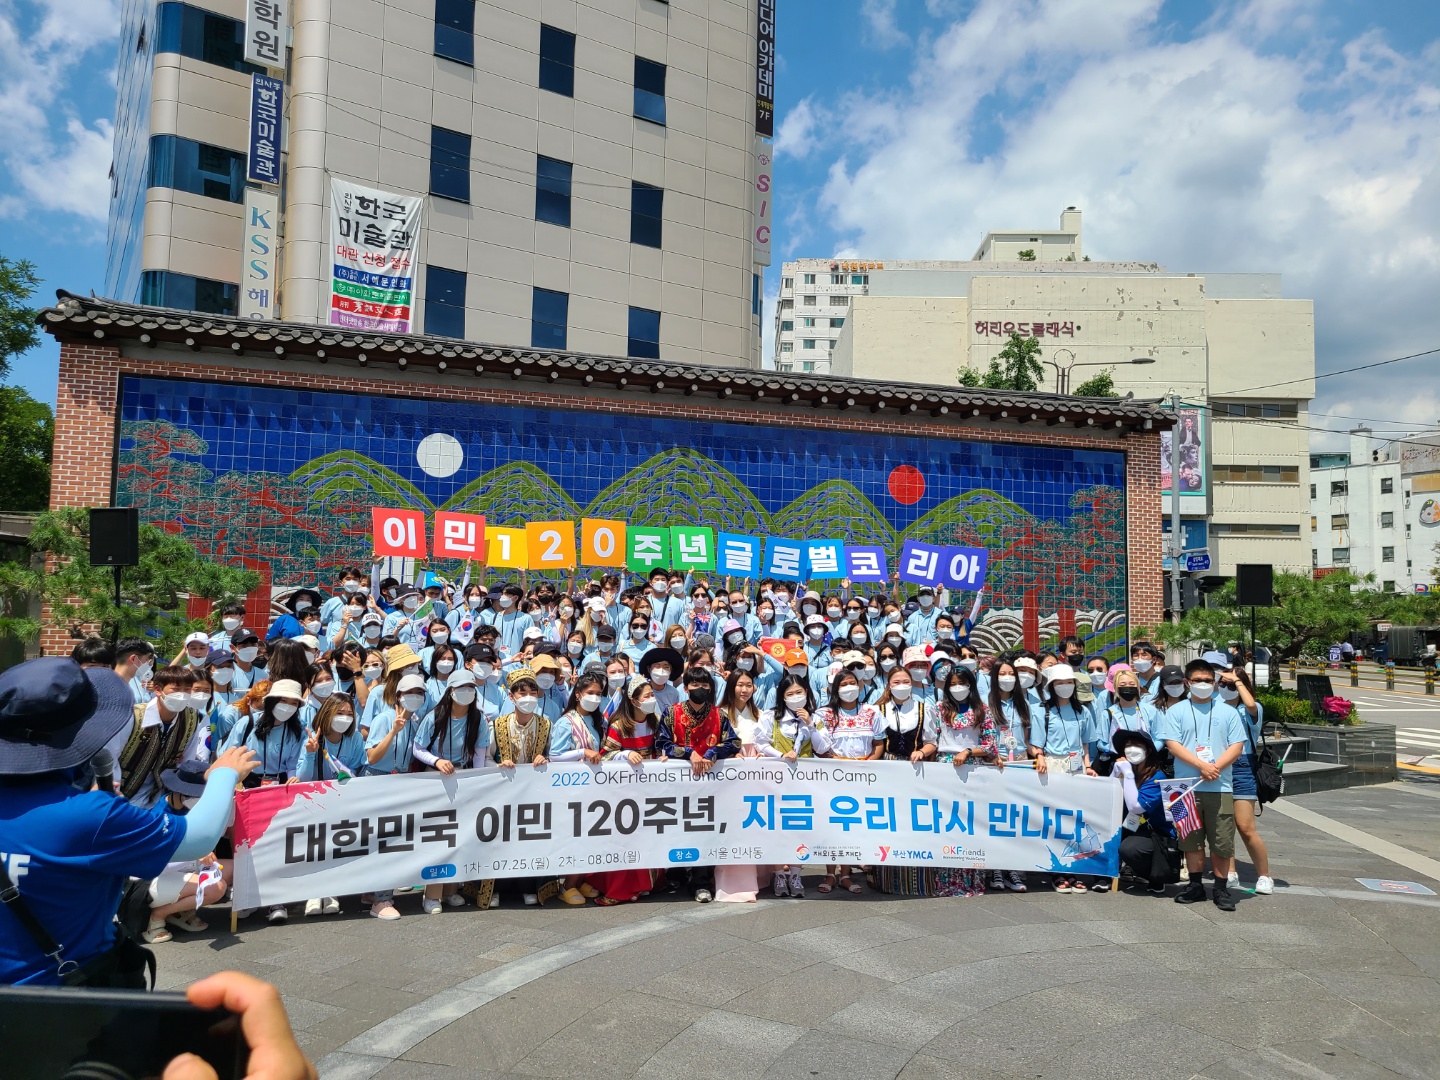 서울 인사동에서 진행한 한인 이민 120주년 기념행사